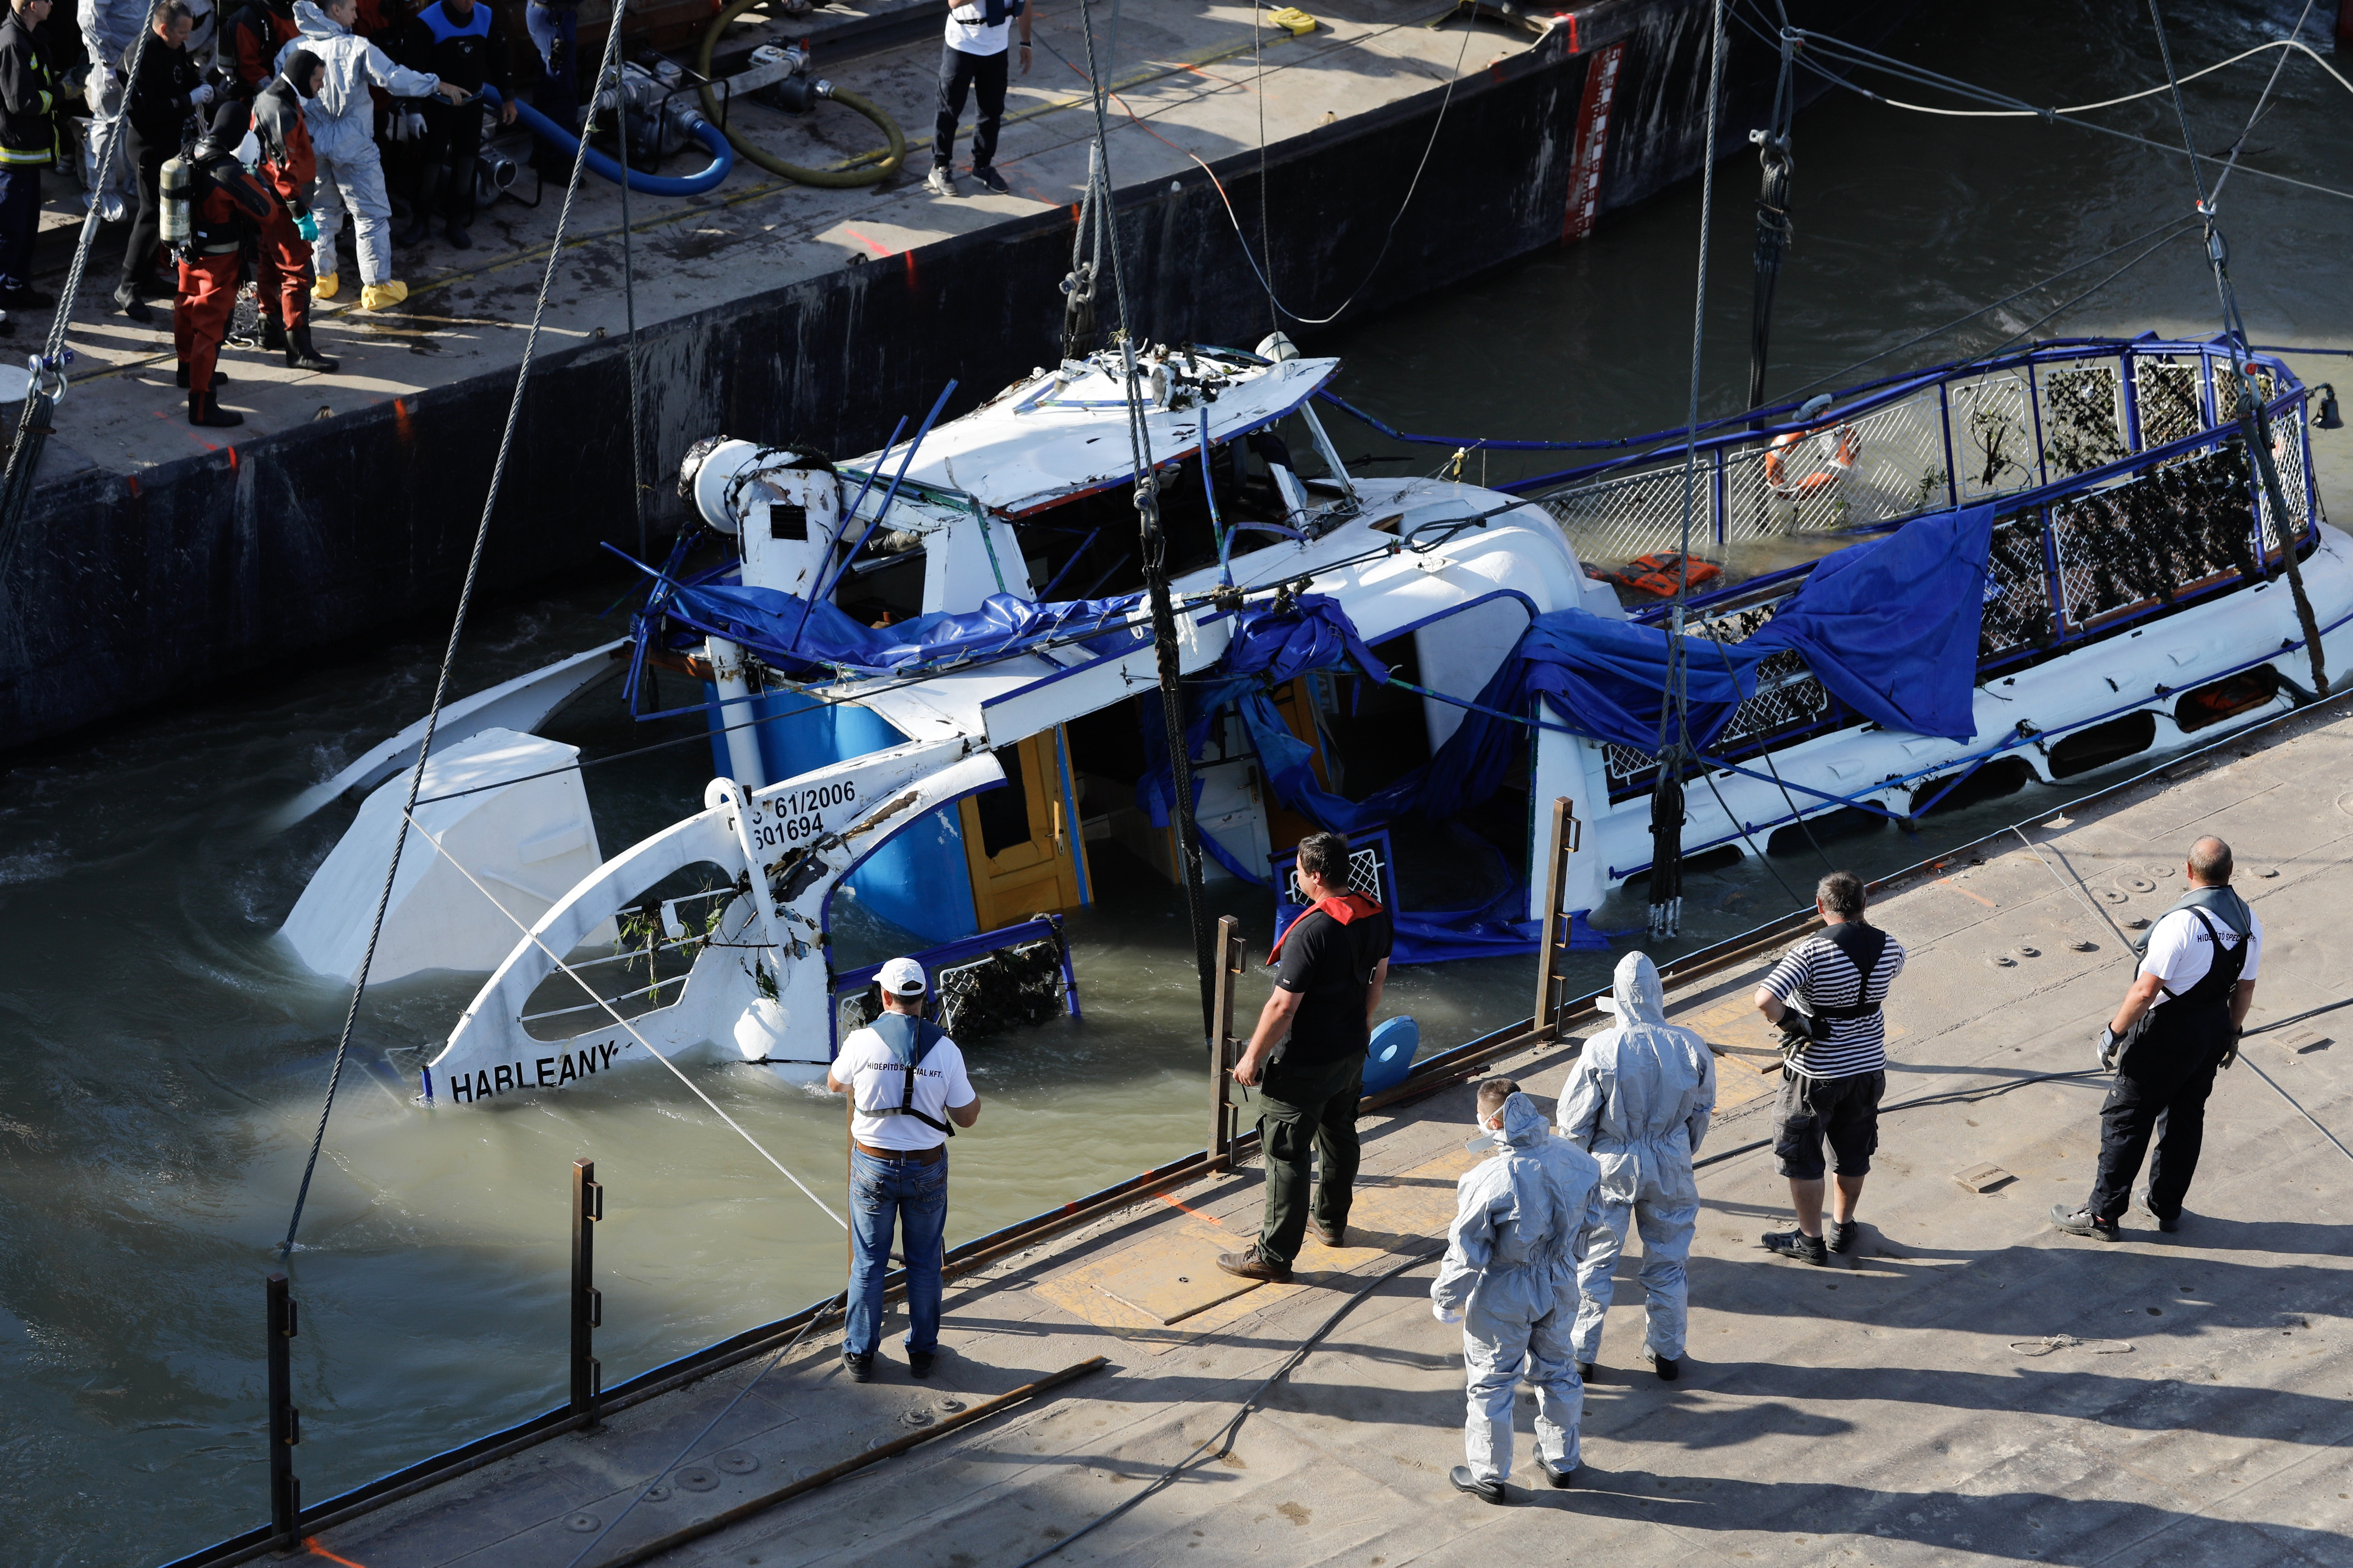 Hableány-Schiffskatastrophe: Prozess gegen Bootsbetreiber wird eingeleitet